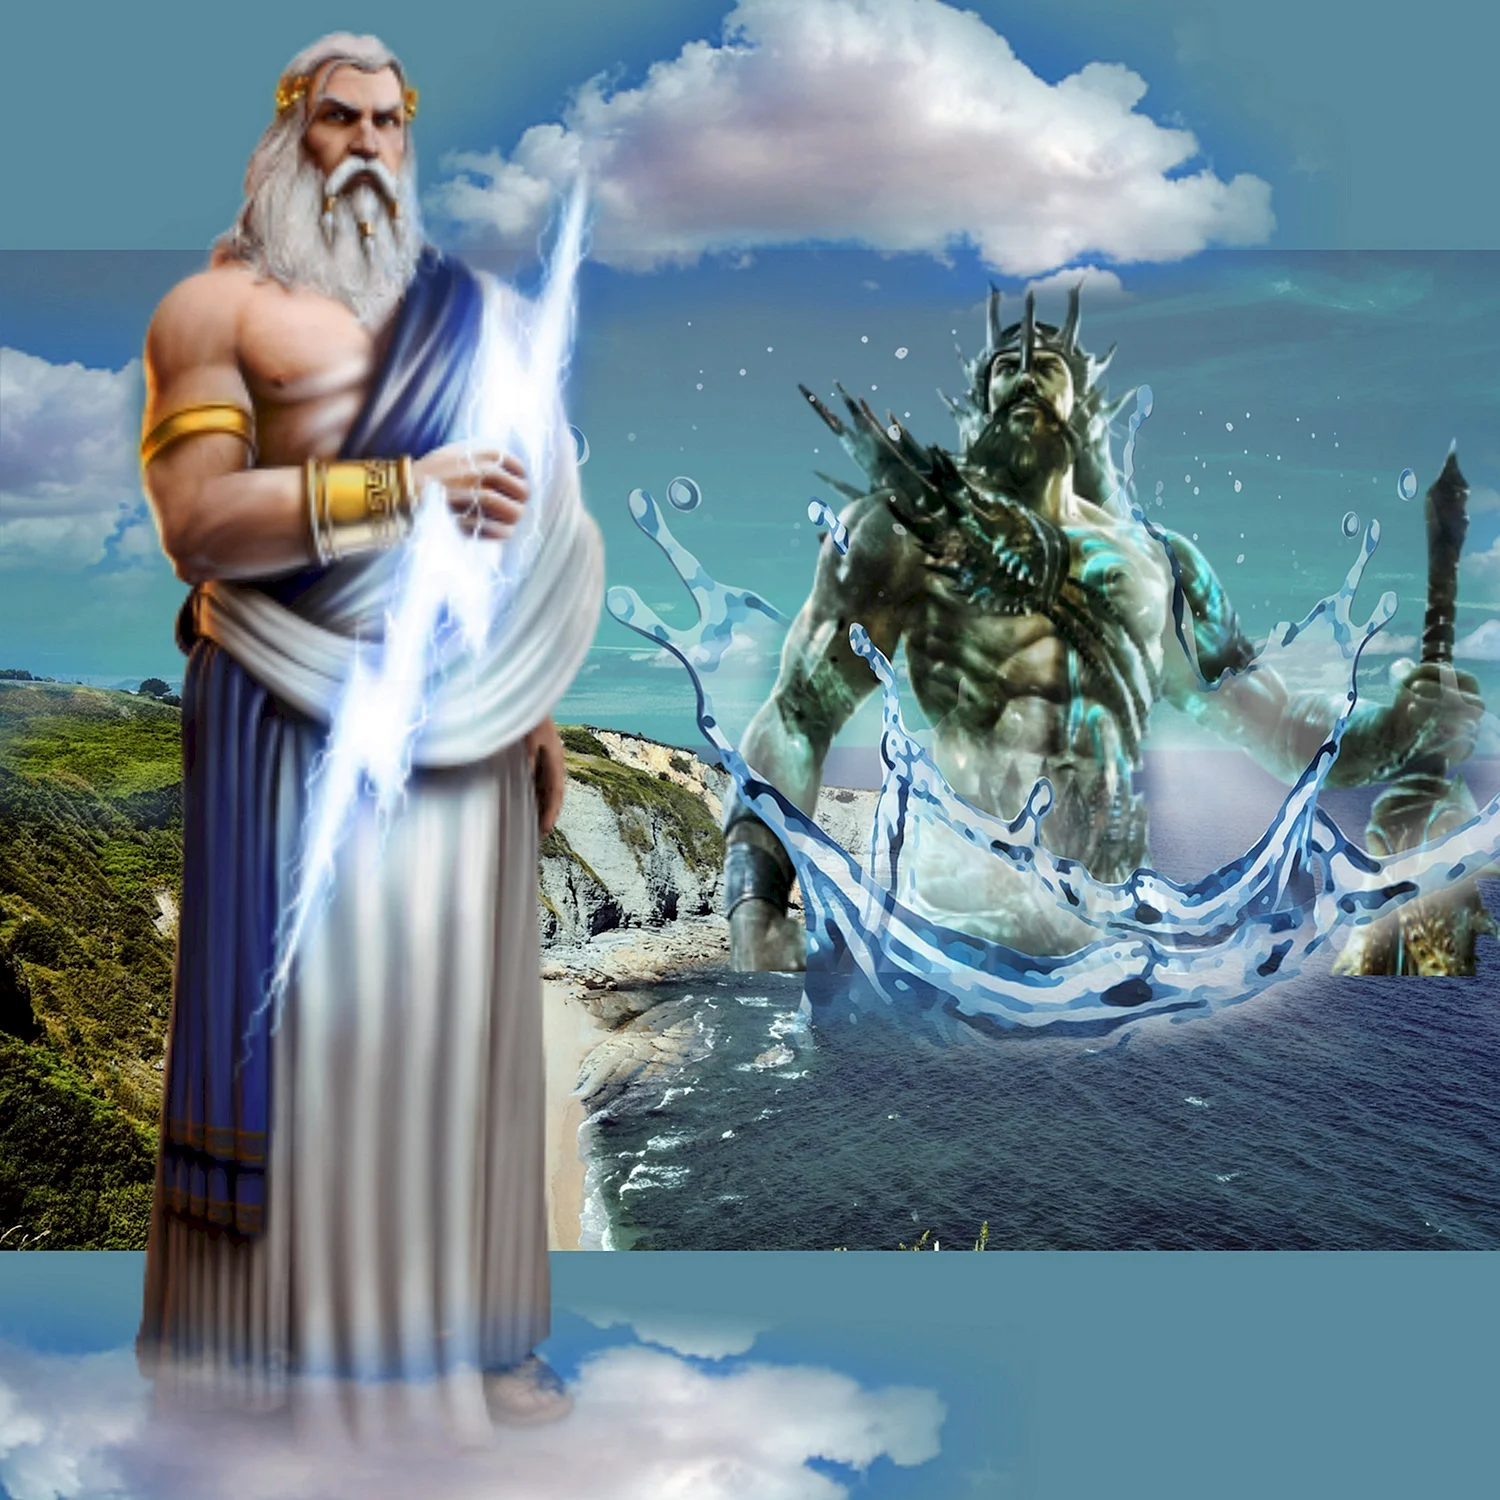 Зевс Бог древней Греции Олимп